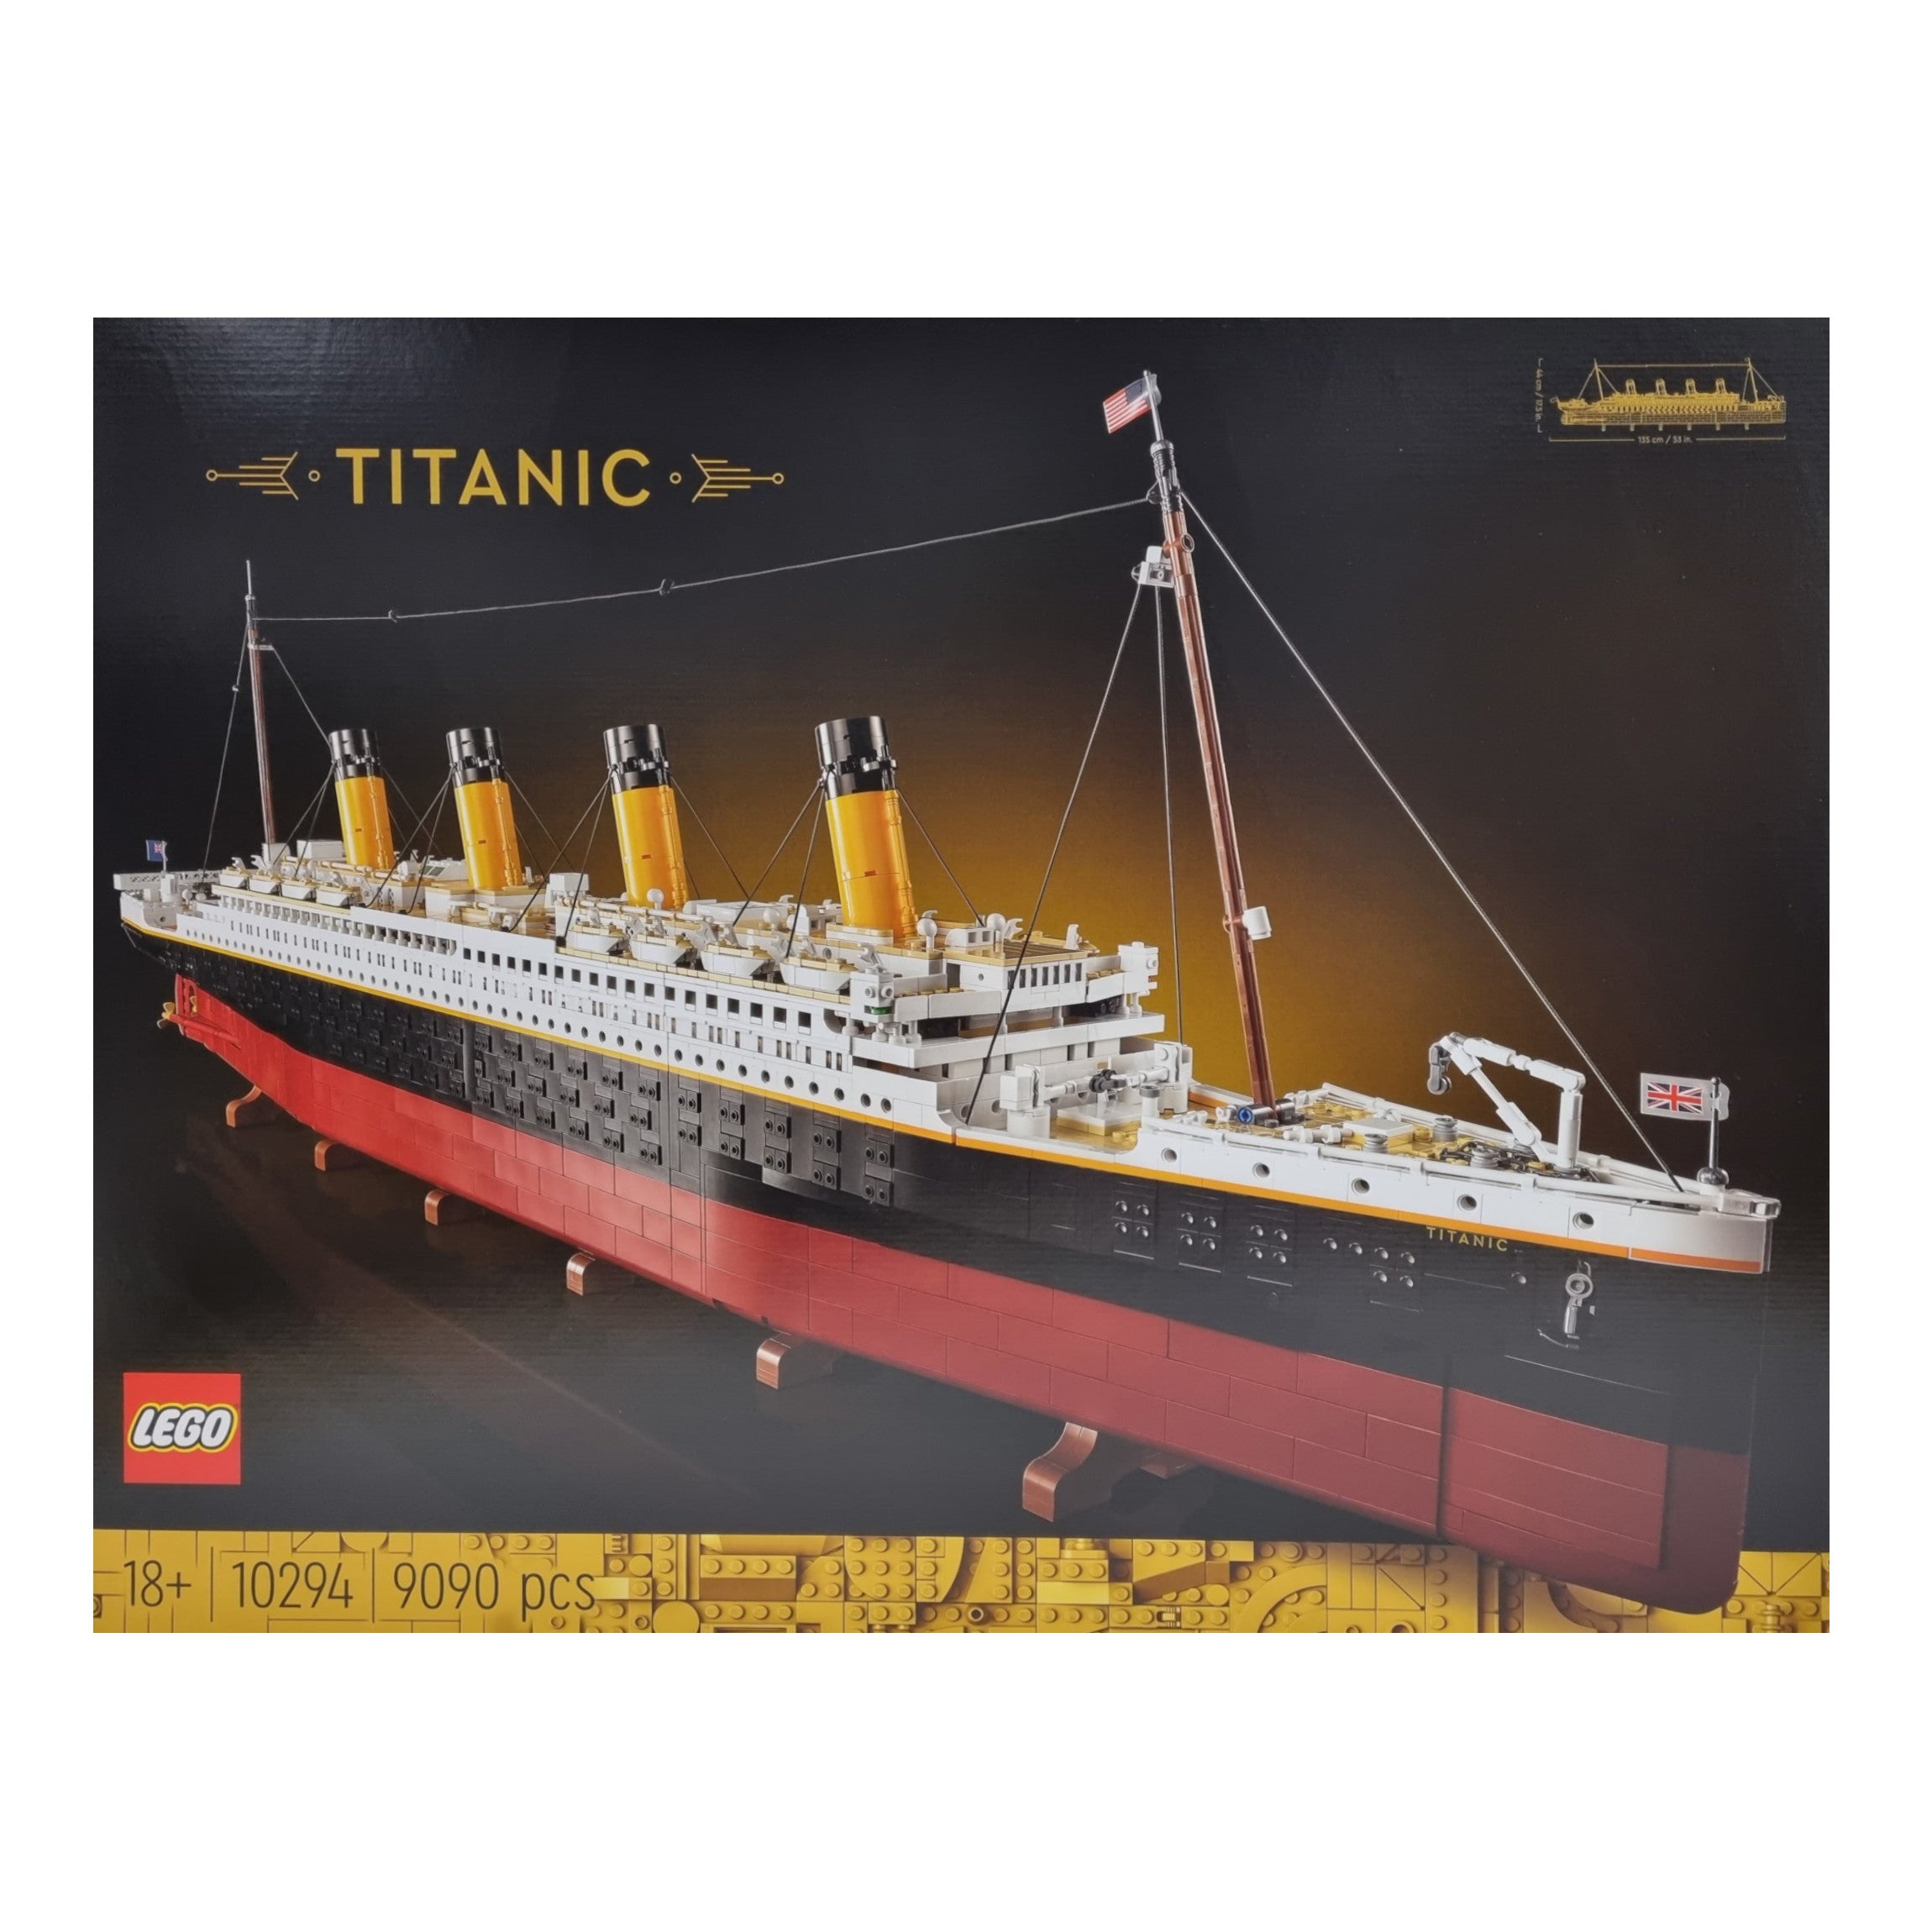 Lego ausleihen - Lego Titanic 10294 - Rent-a-Project